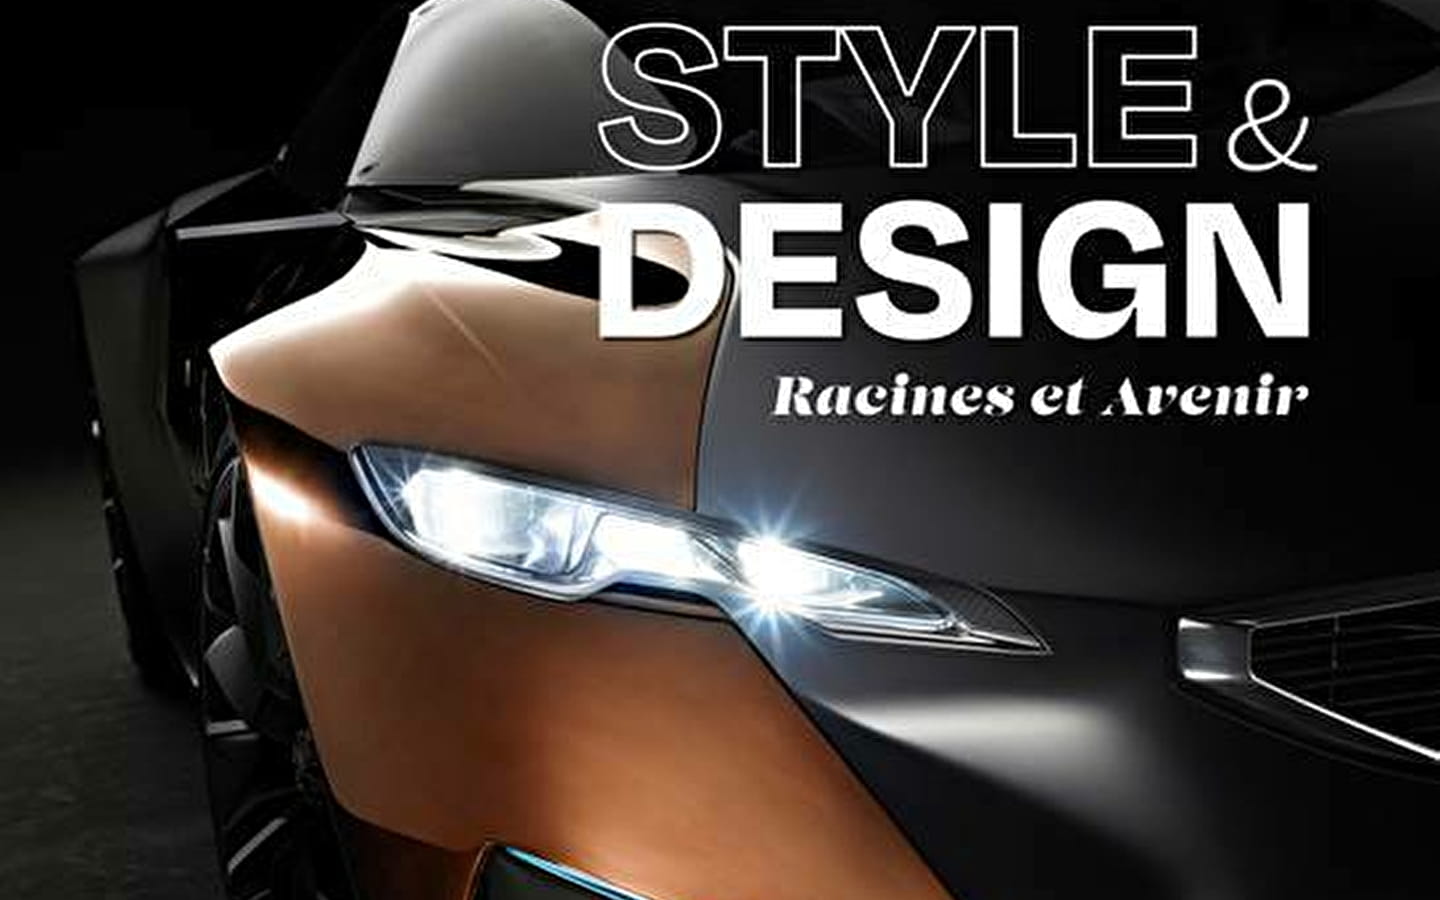 Exhibition: Peugeot Style & Design